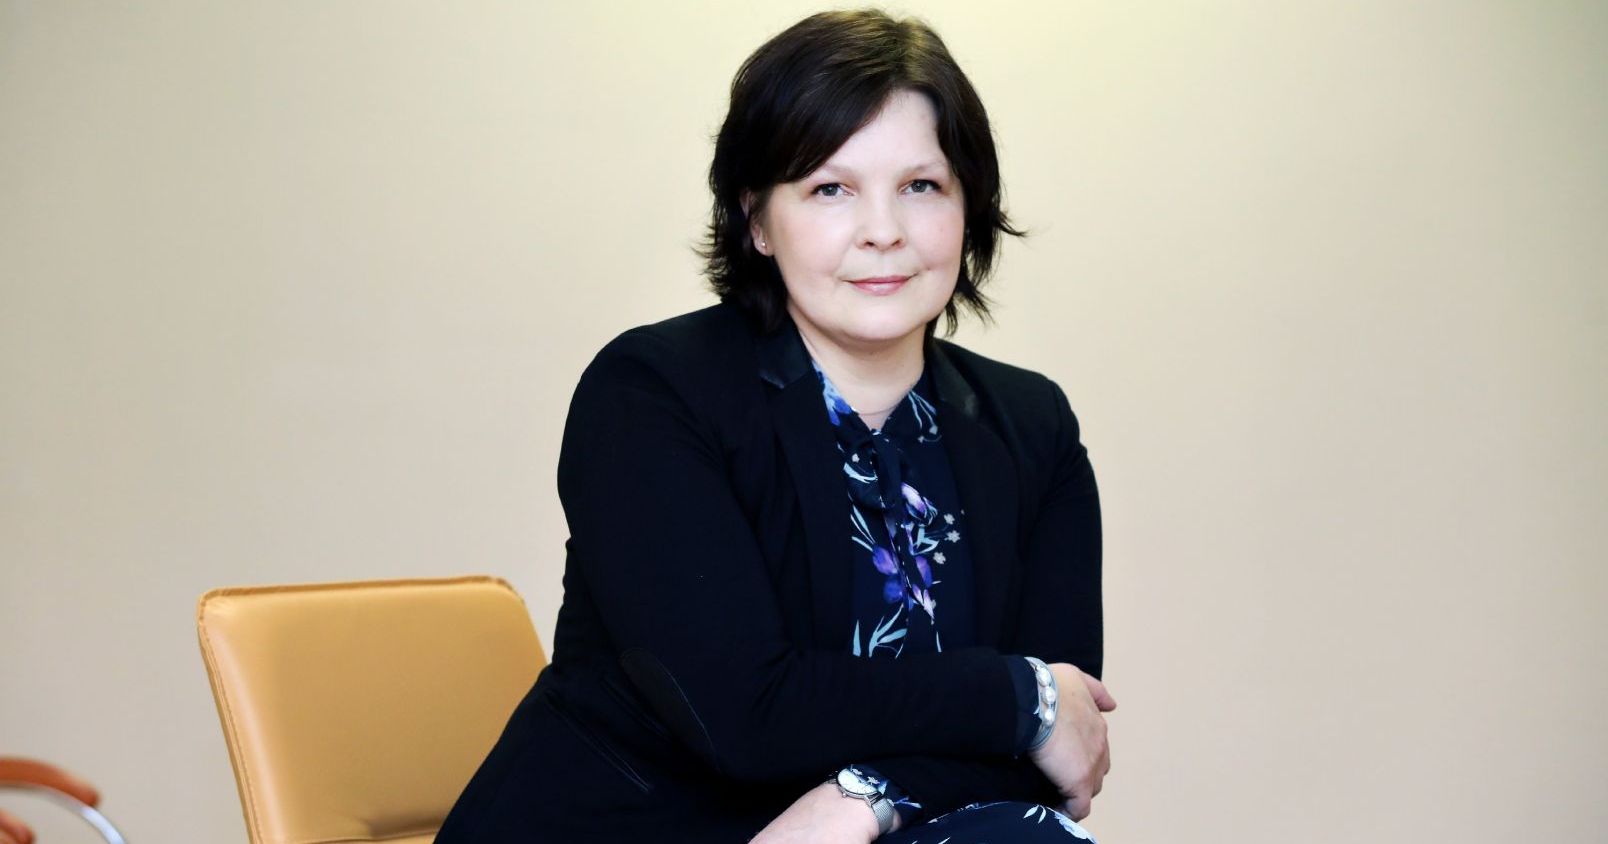 Dr Małgorzata Fopka-Kowalczyk